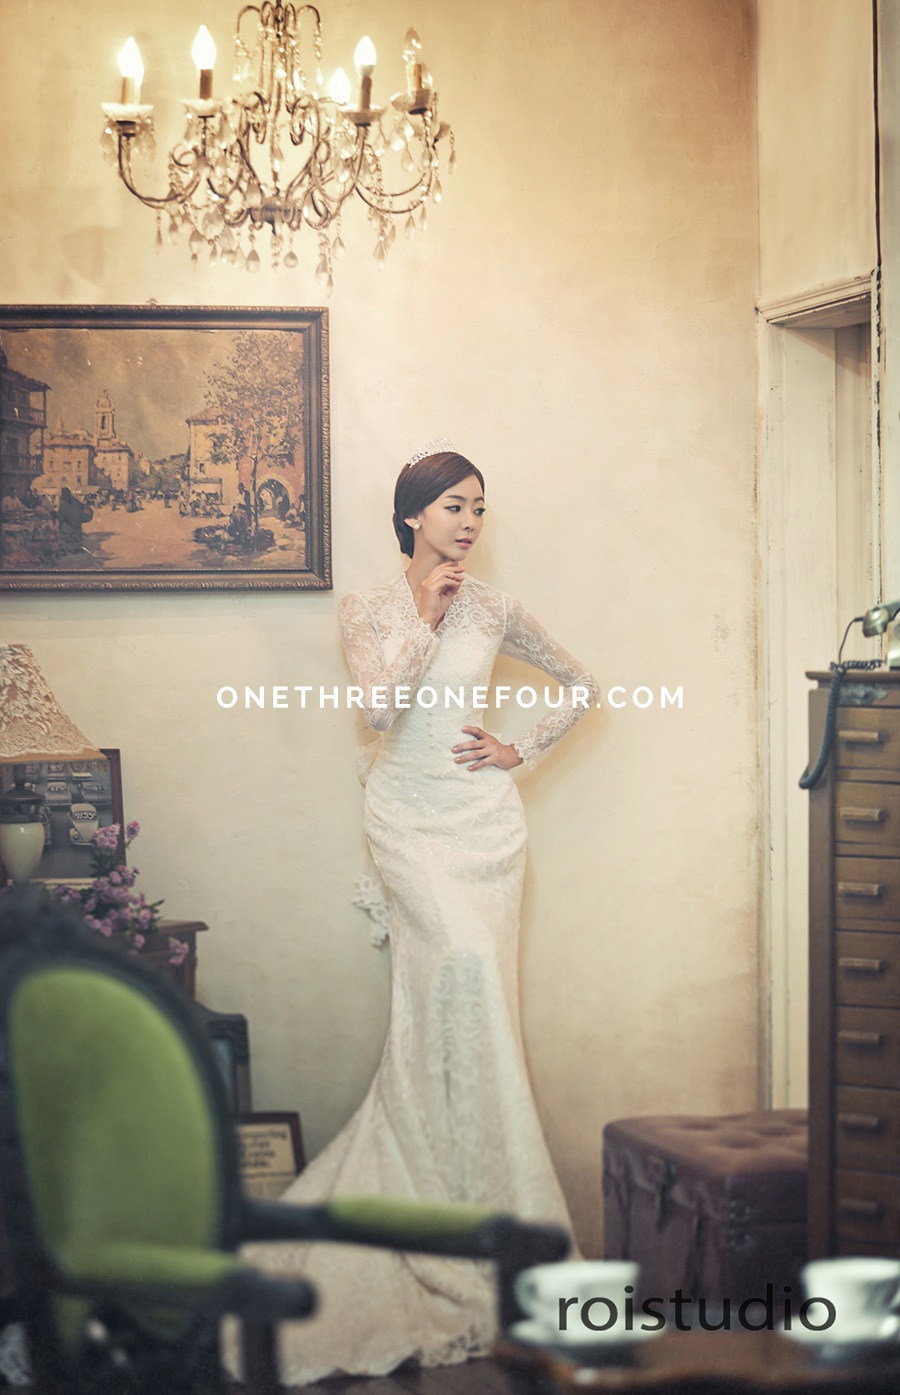 韓國婚紗攝影 － 古典歐美主題 by Roi Studio on OneThreeOneFour 13